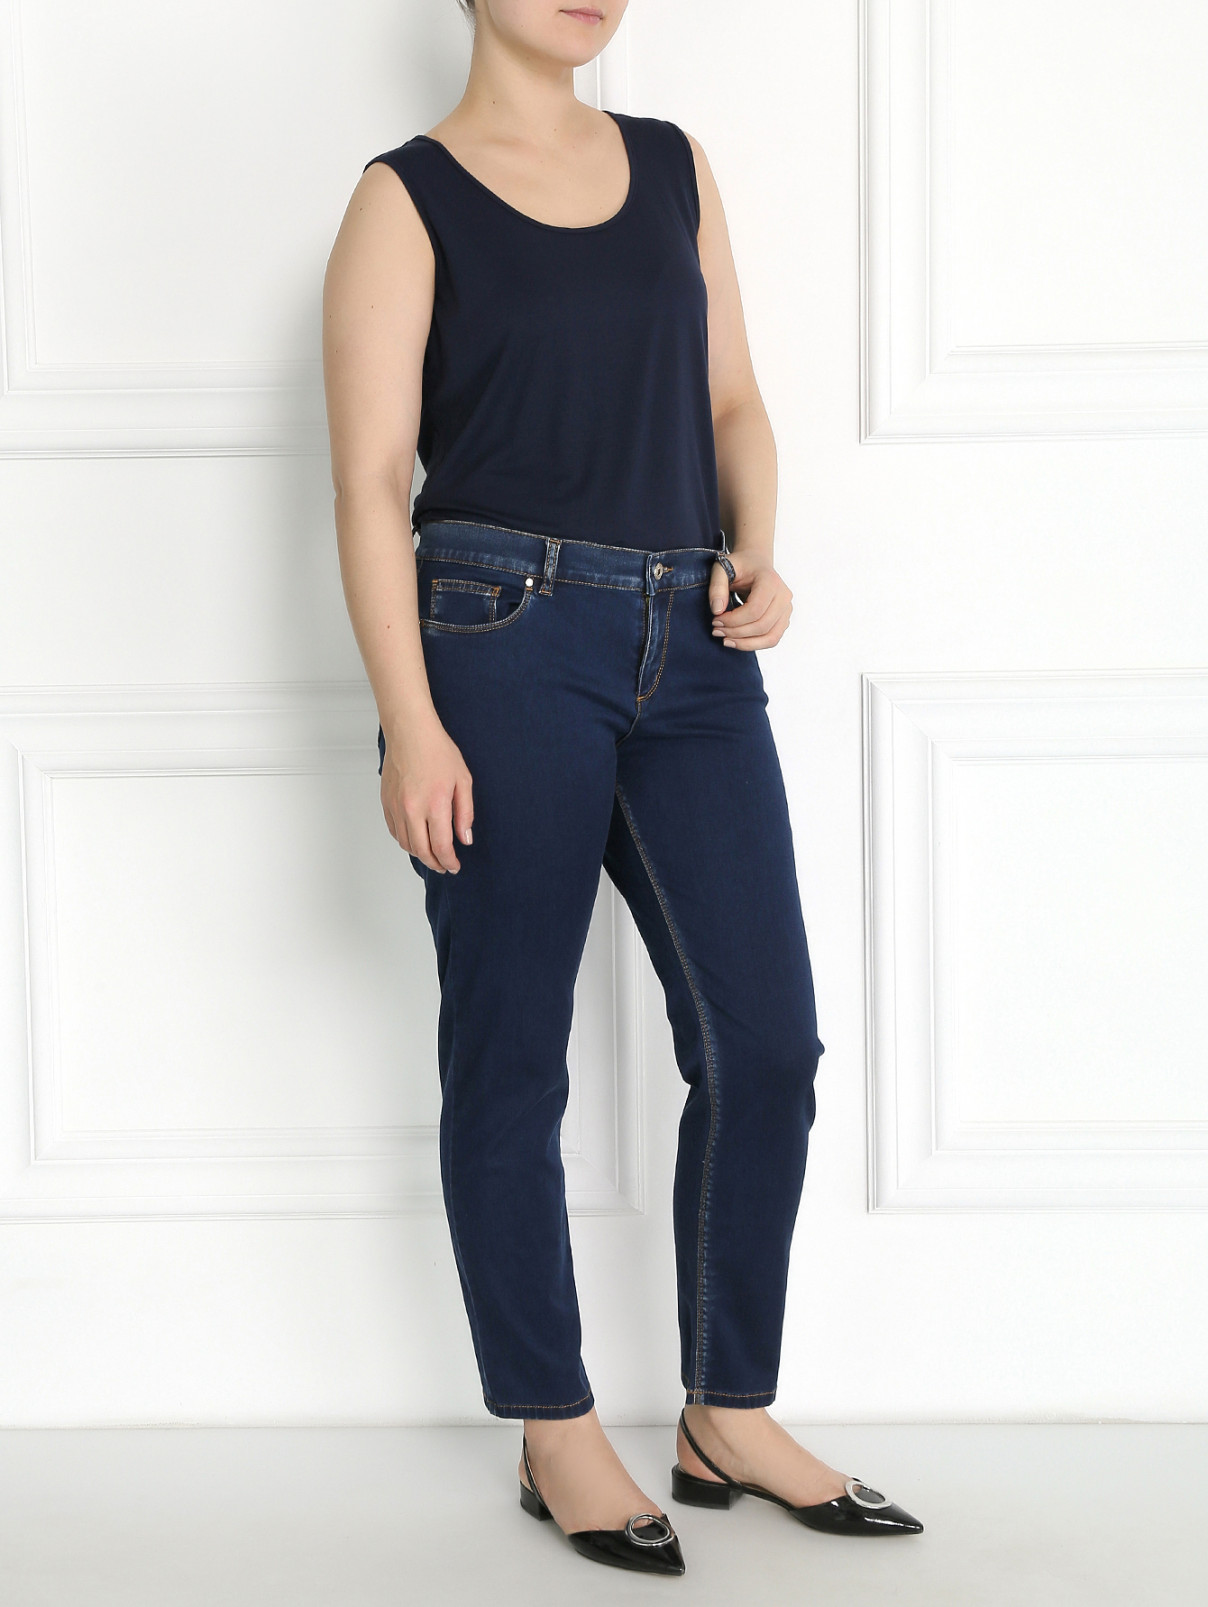 Укороченные джинсы Marina Sport  –  Модель Общий вид  – Цвет:  Синий